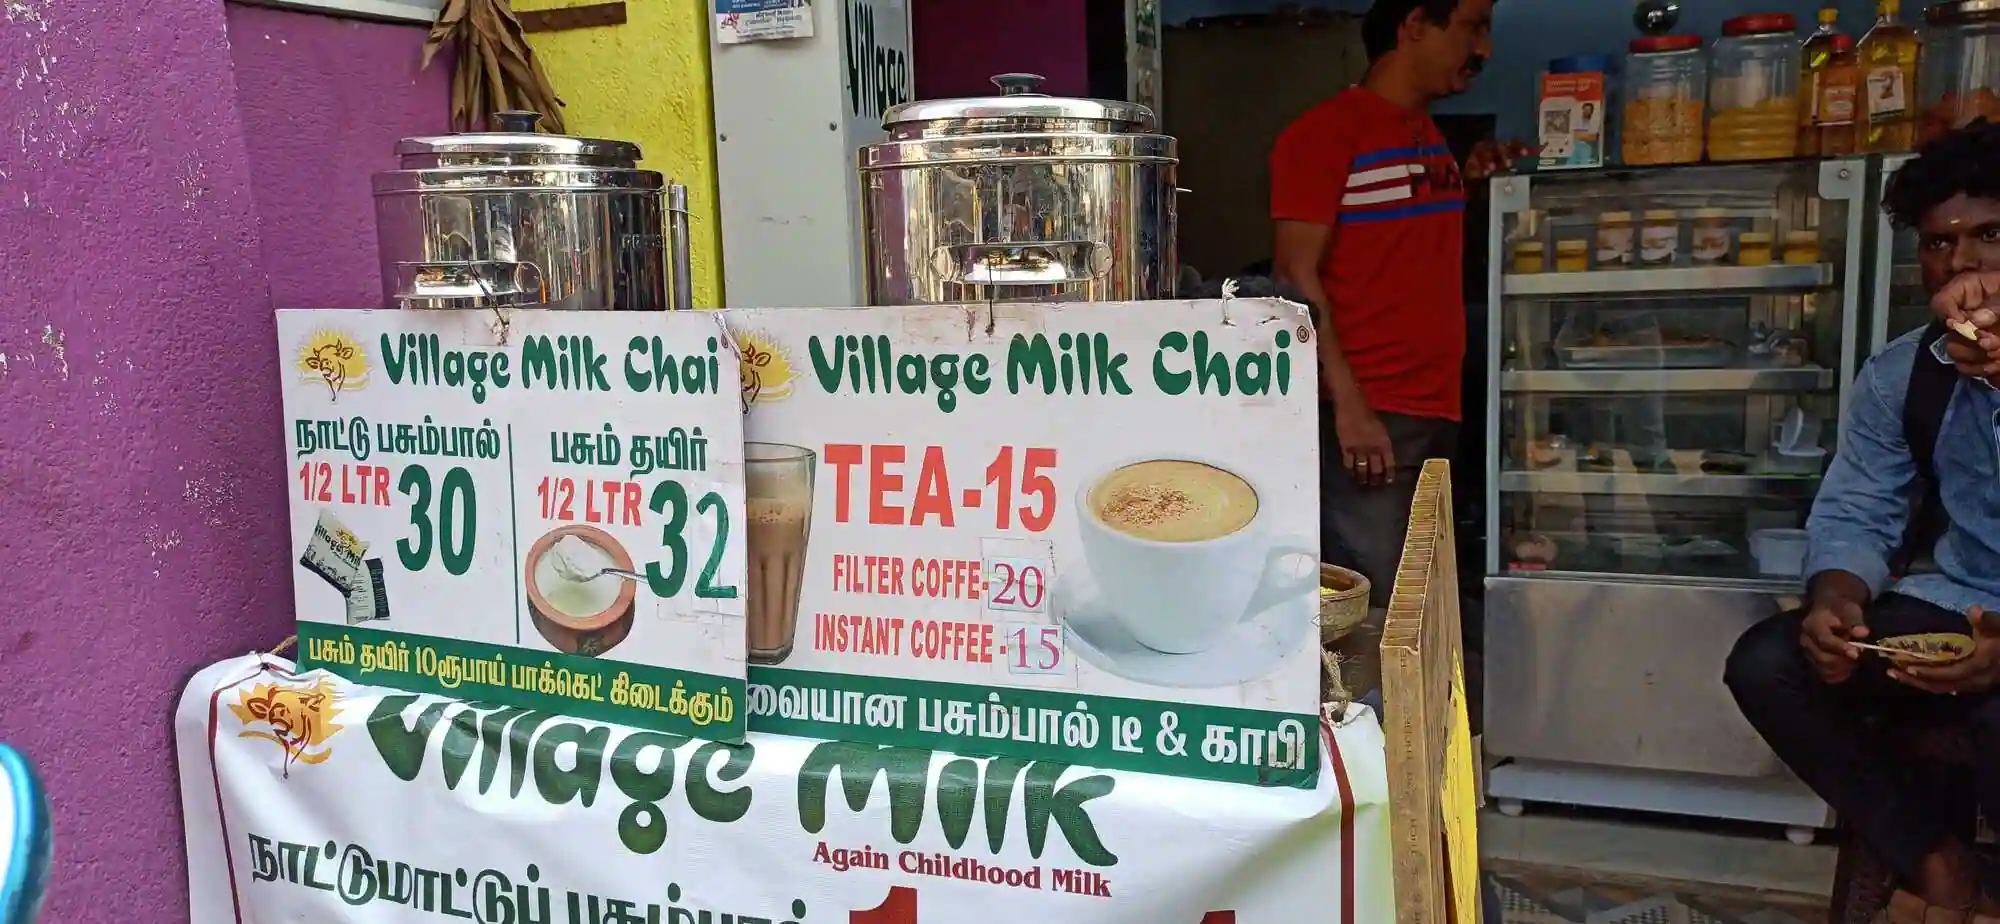 How to Get a Village Milk Chai Franchise? Cost, Profit, etc